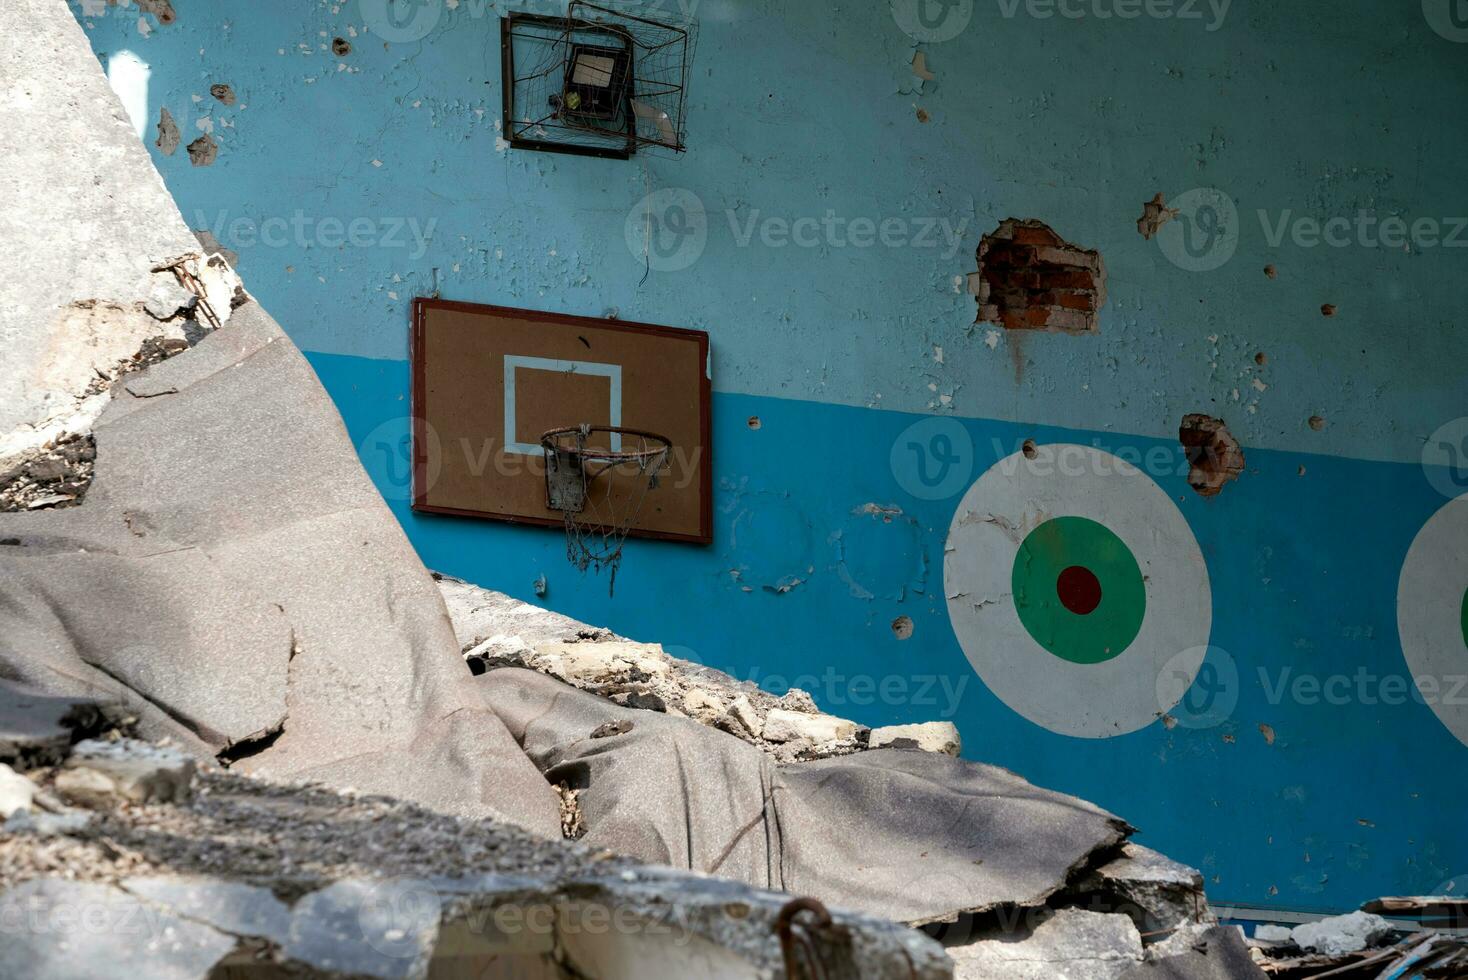 förstörd och bränt skola i de stad ryssland ukraina krig foto